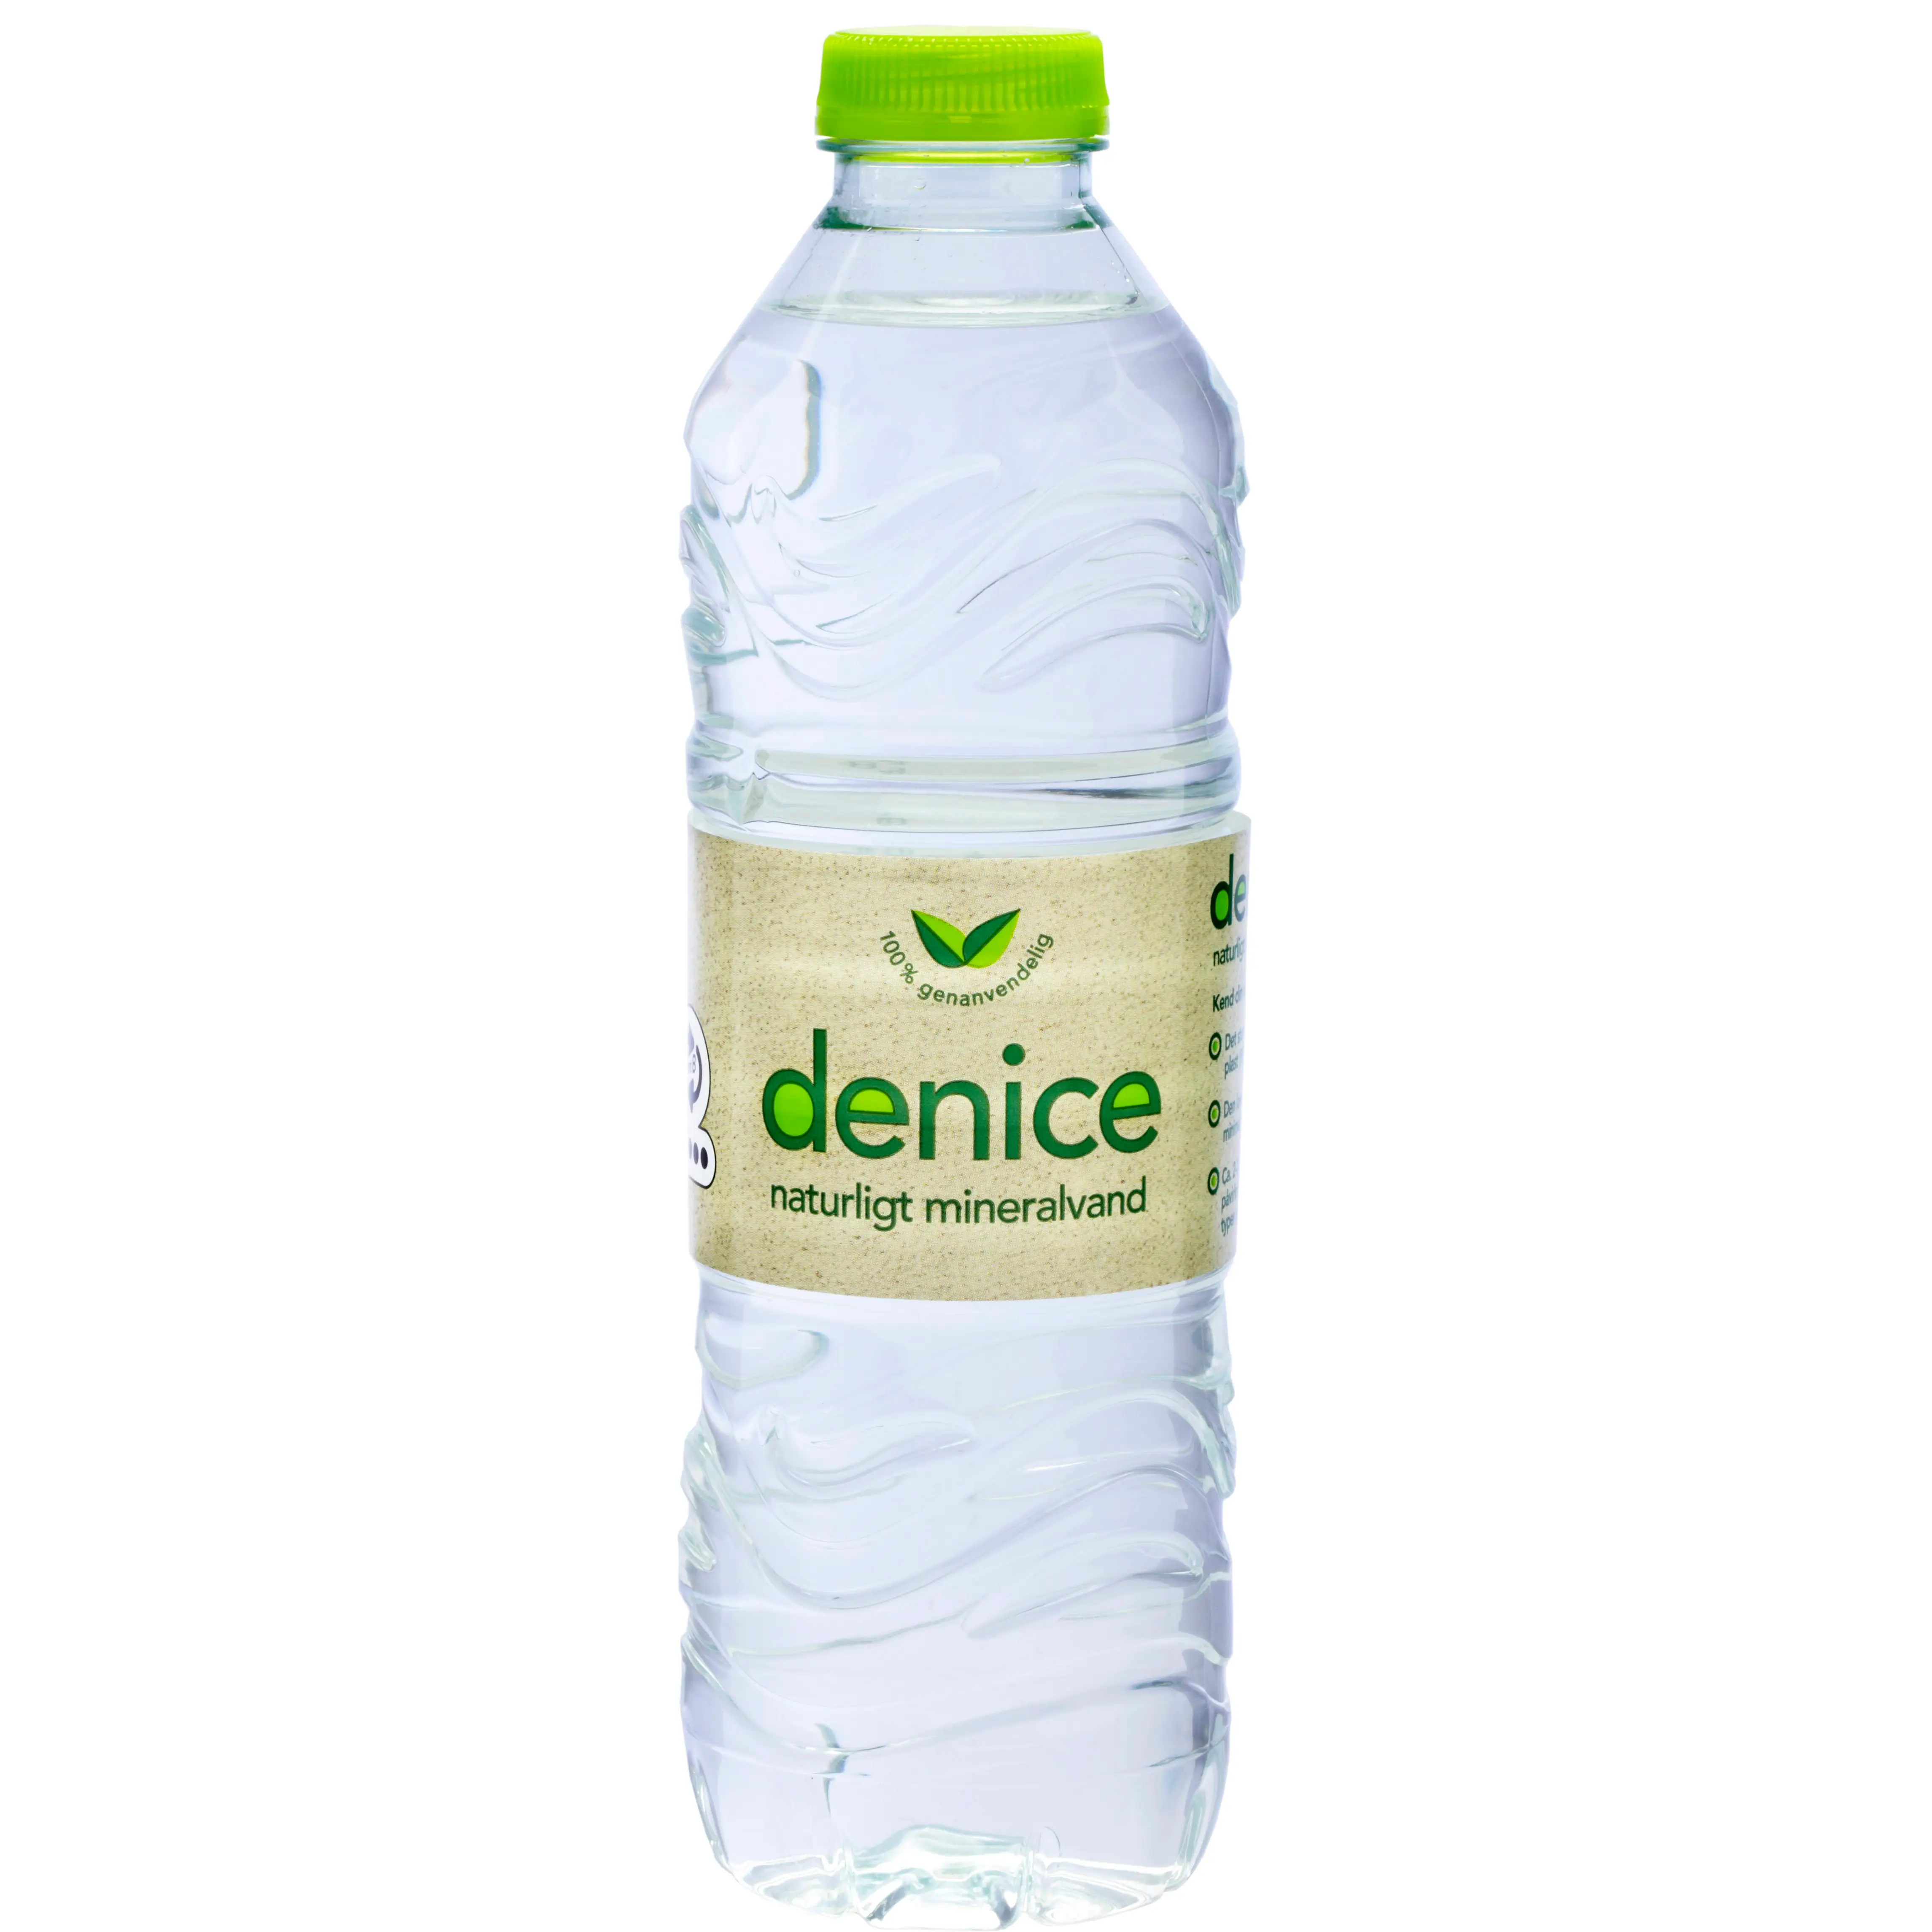 Vand Denice 50cl - 20 flasker med pant 1,50 kr. - Køb billigt på Grafical.dk